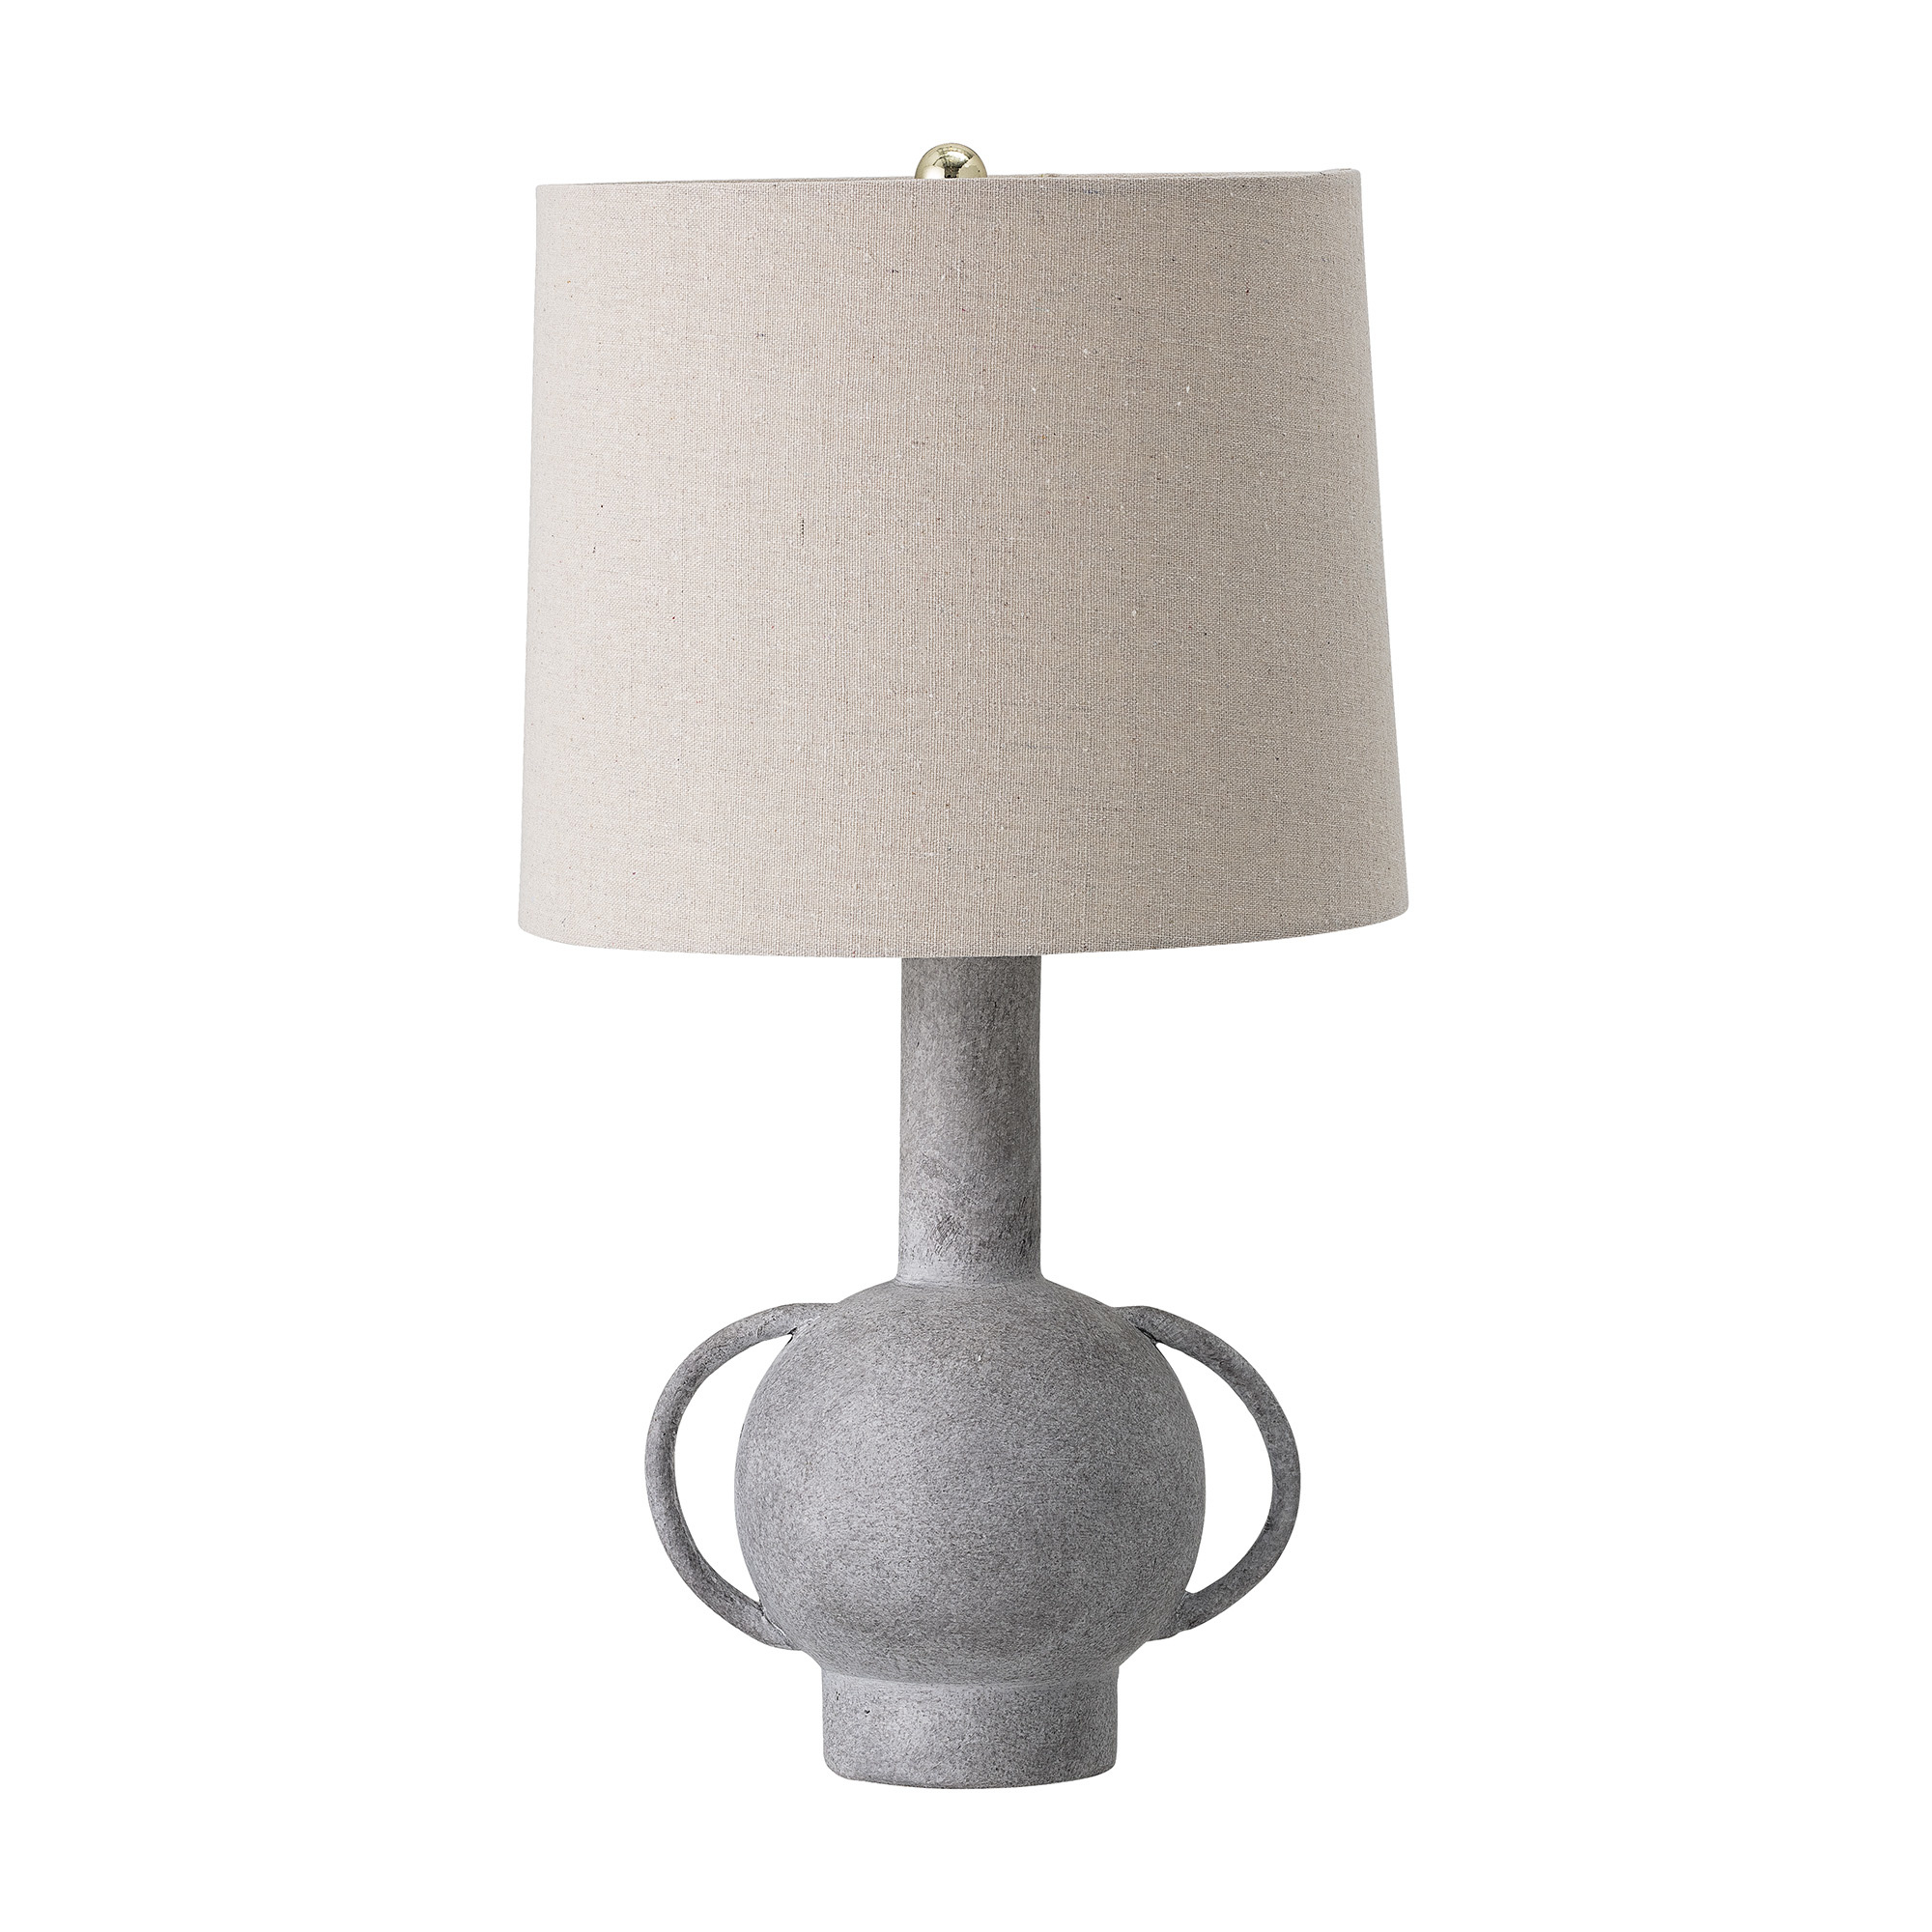 Moderne tafellamp / Bloomingville tafellamp keramiek - Livv